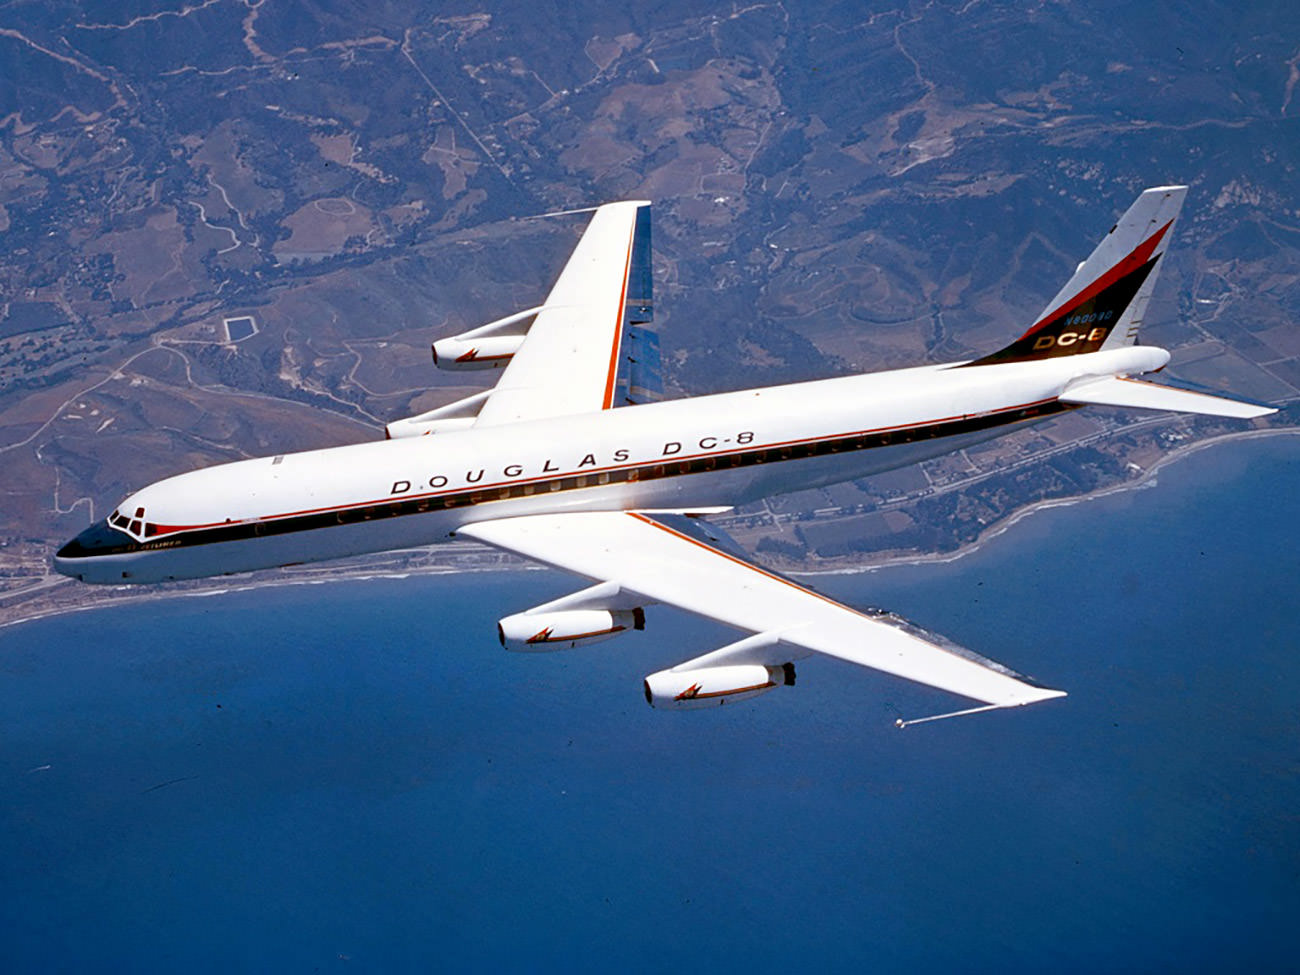 داگلاس DC-8